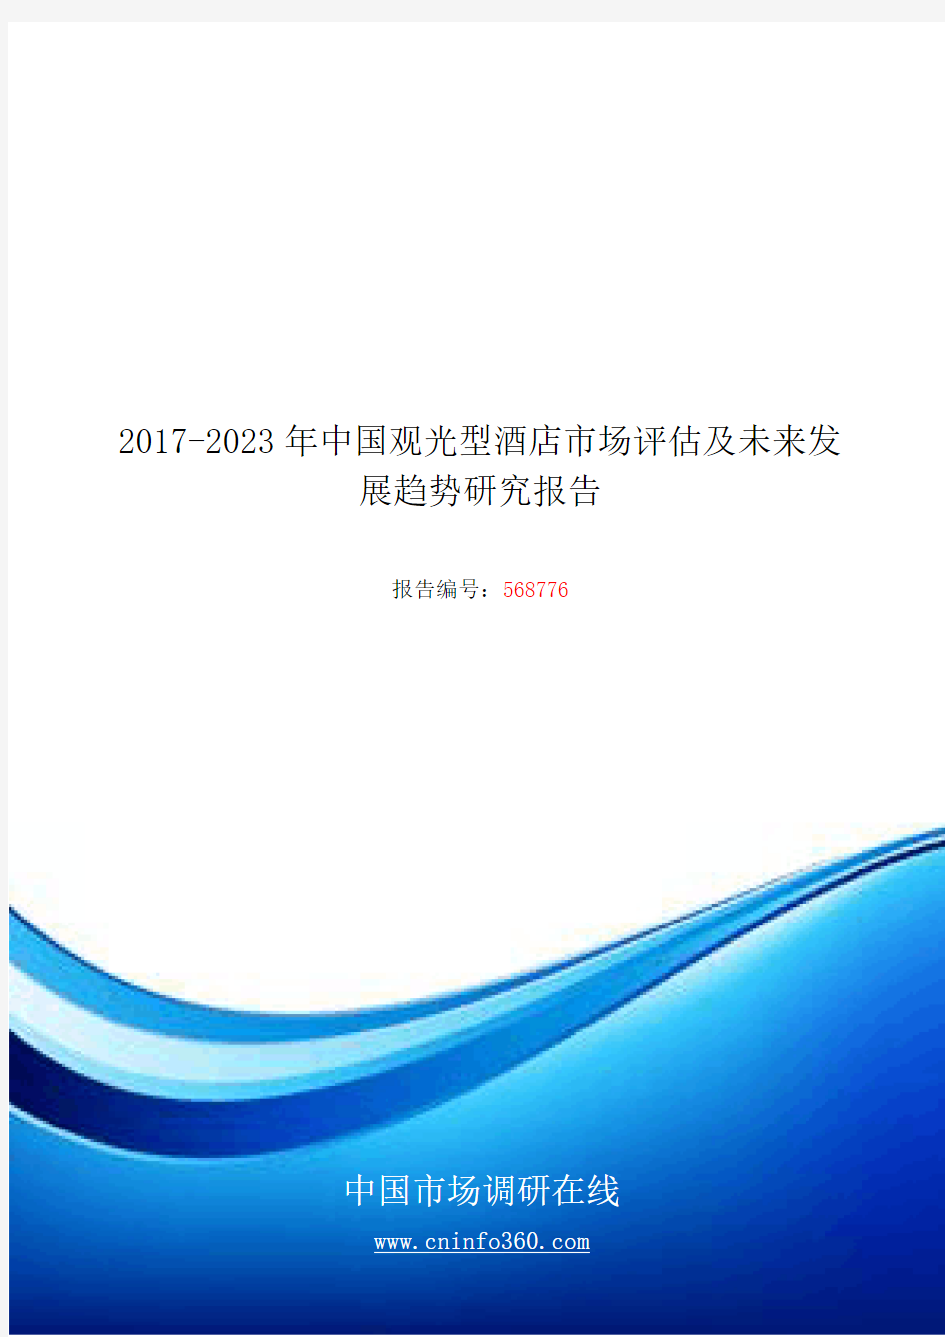 2018年中国观光型酒店市场评估发展研究报告目录